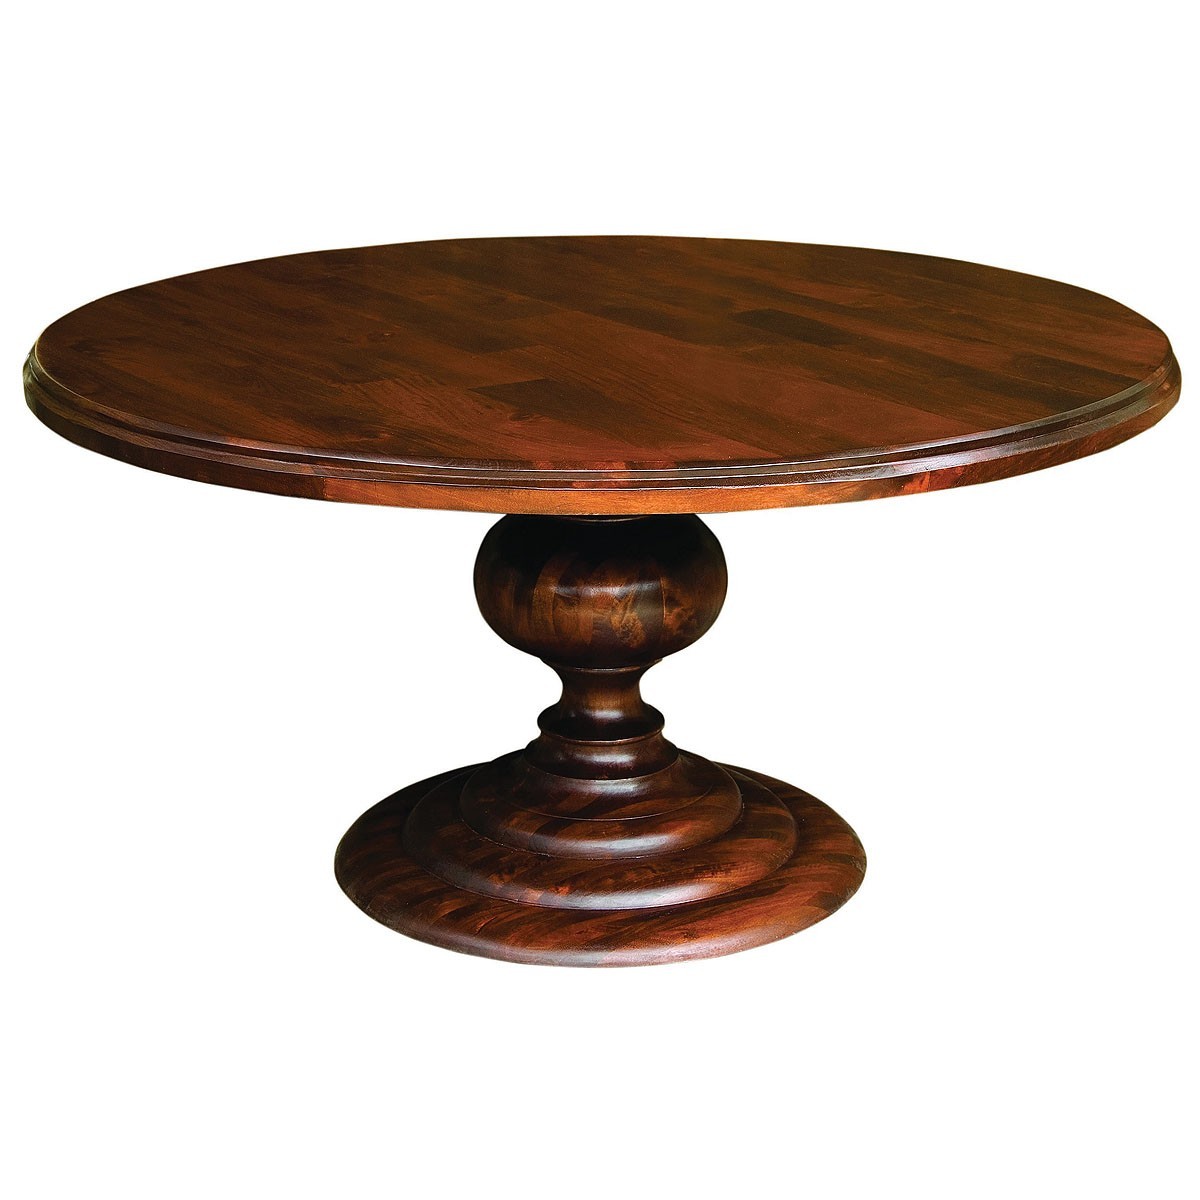 Столик из дерева круглый. Круглый деревянный стол. Круглый деревянный столик. Столик из массива дерева круглый. Круглый столик дерево.